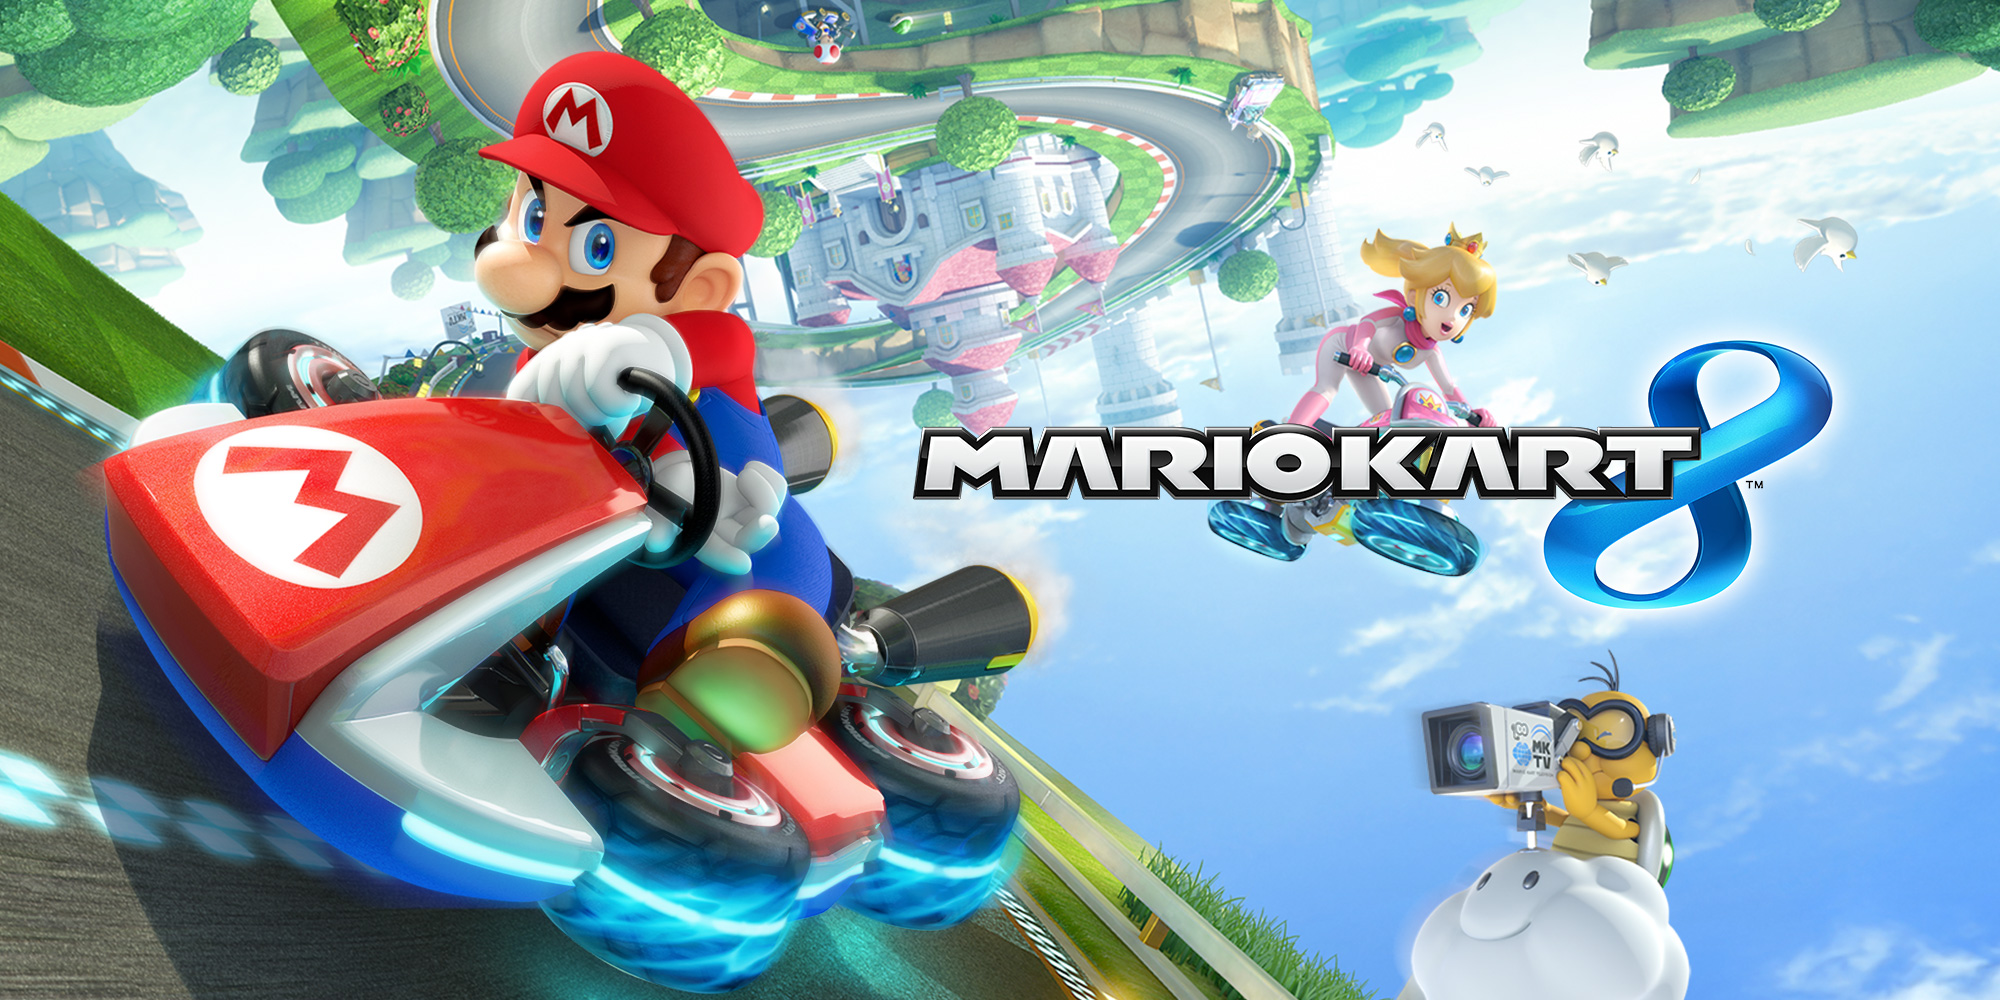 Official Site - Mario Kart 8 for Wii U - DLC